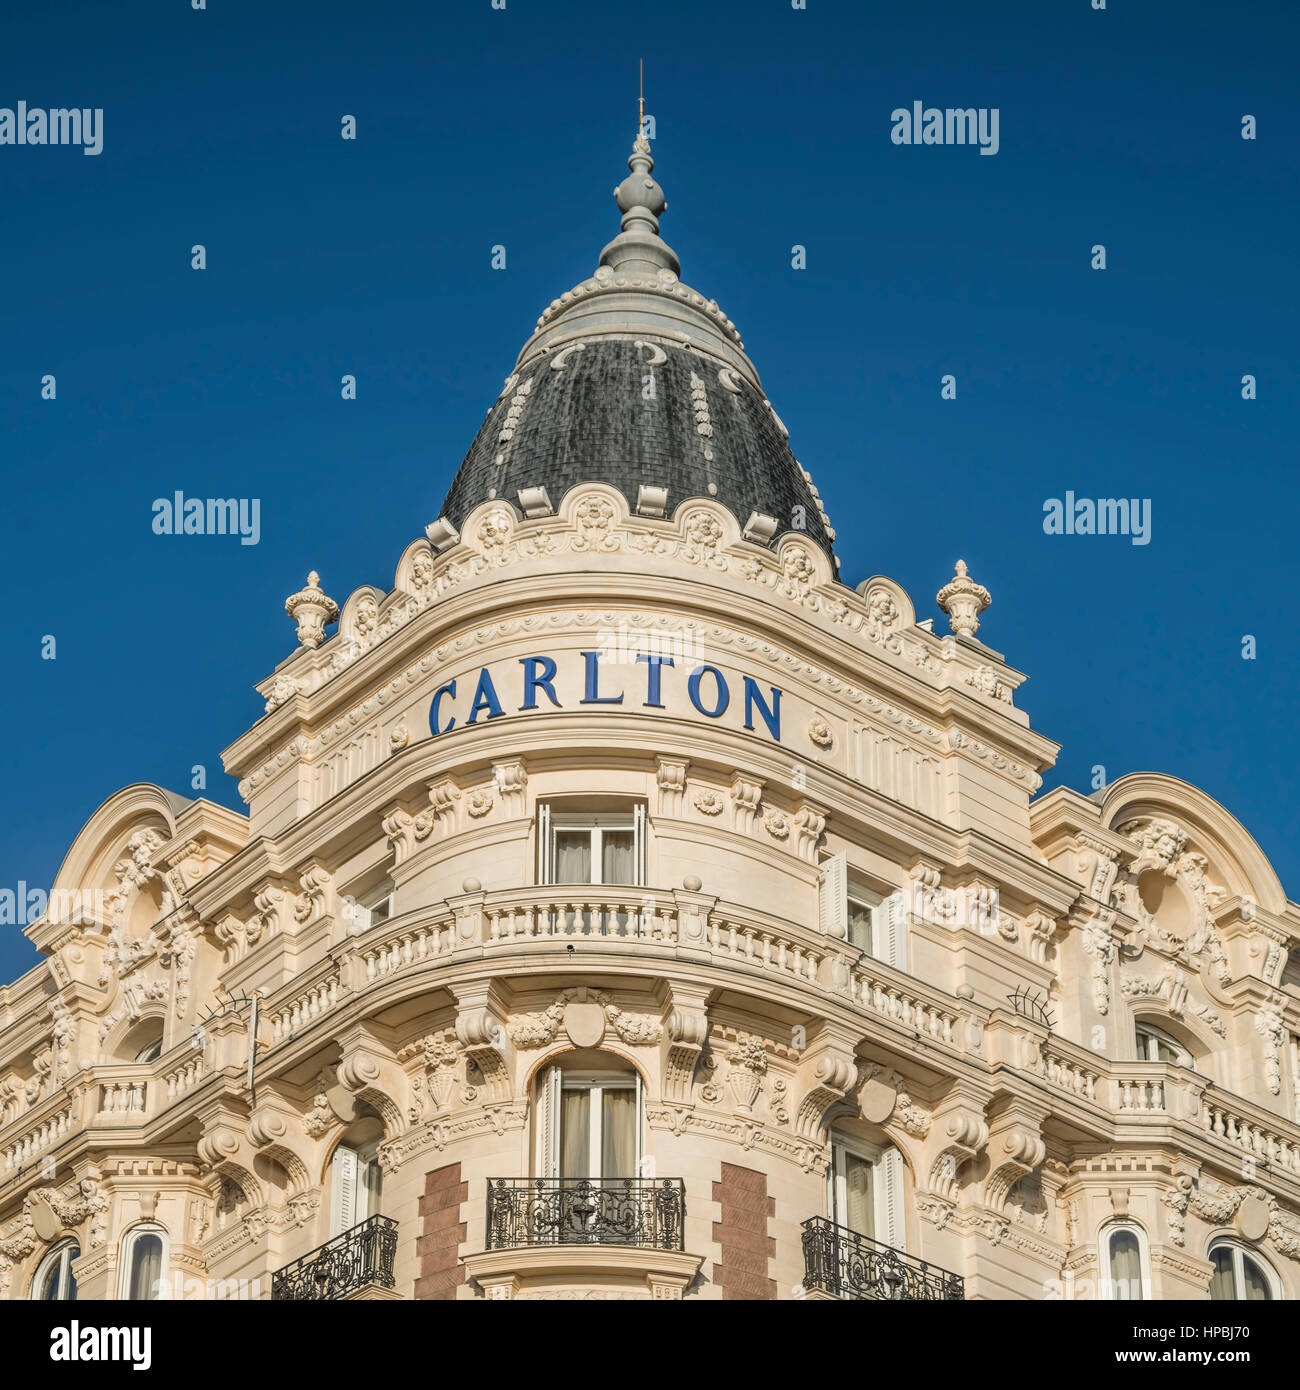 Carlton, Hotel, Facade, Croisette,  Cannes, Cote d Azur, France, Stock Photo